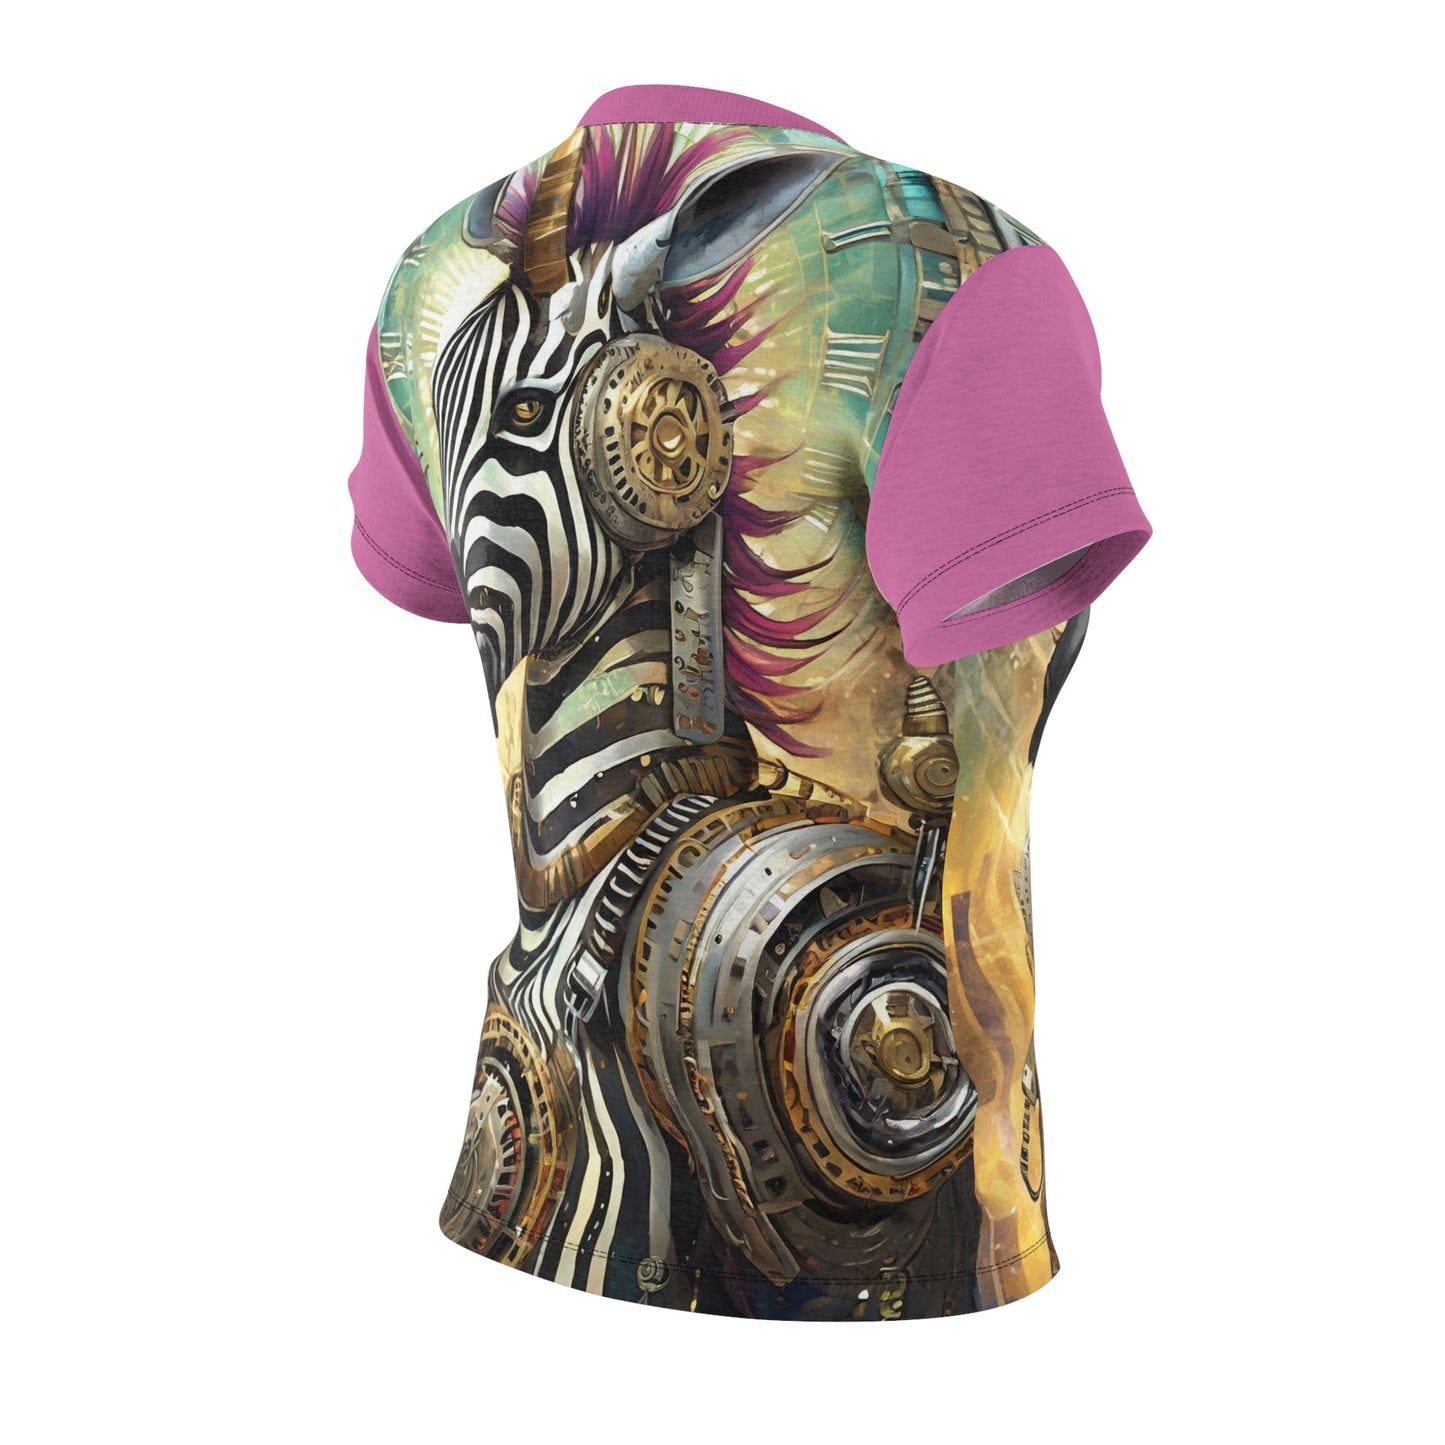 Women's Cut & Sew Tee Steam Punk Mystical Zebra AOP T-shirt